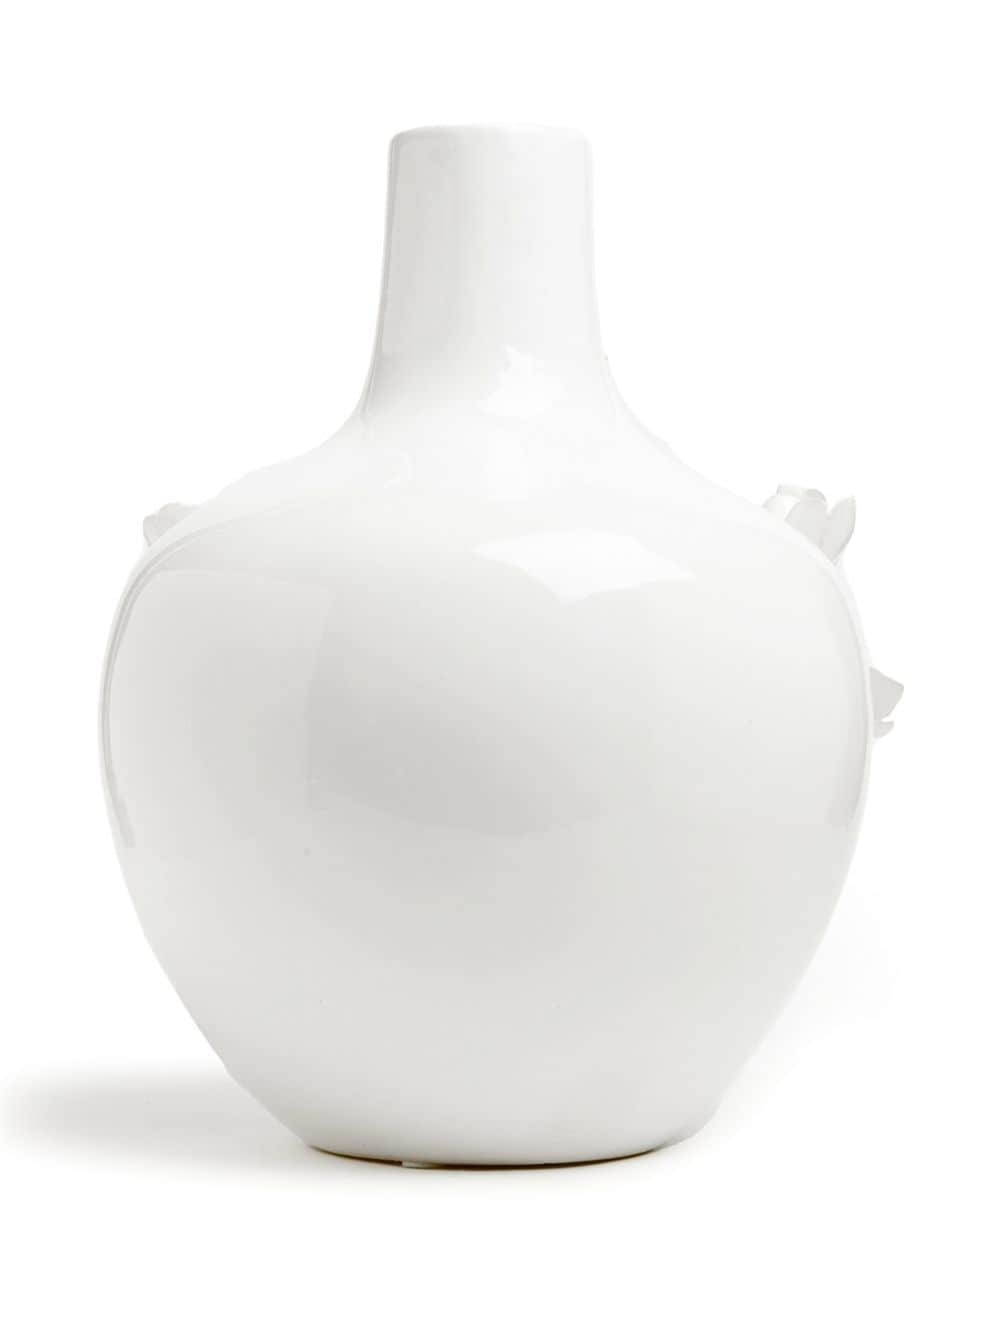 Image 2 of POLSPOTTEN 3D porcelain rose vase